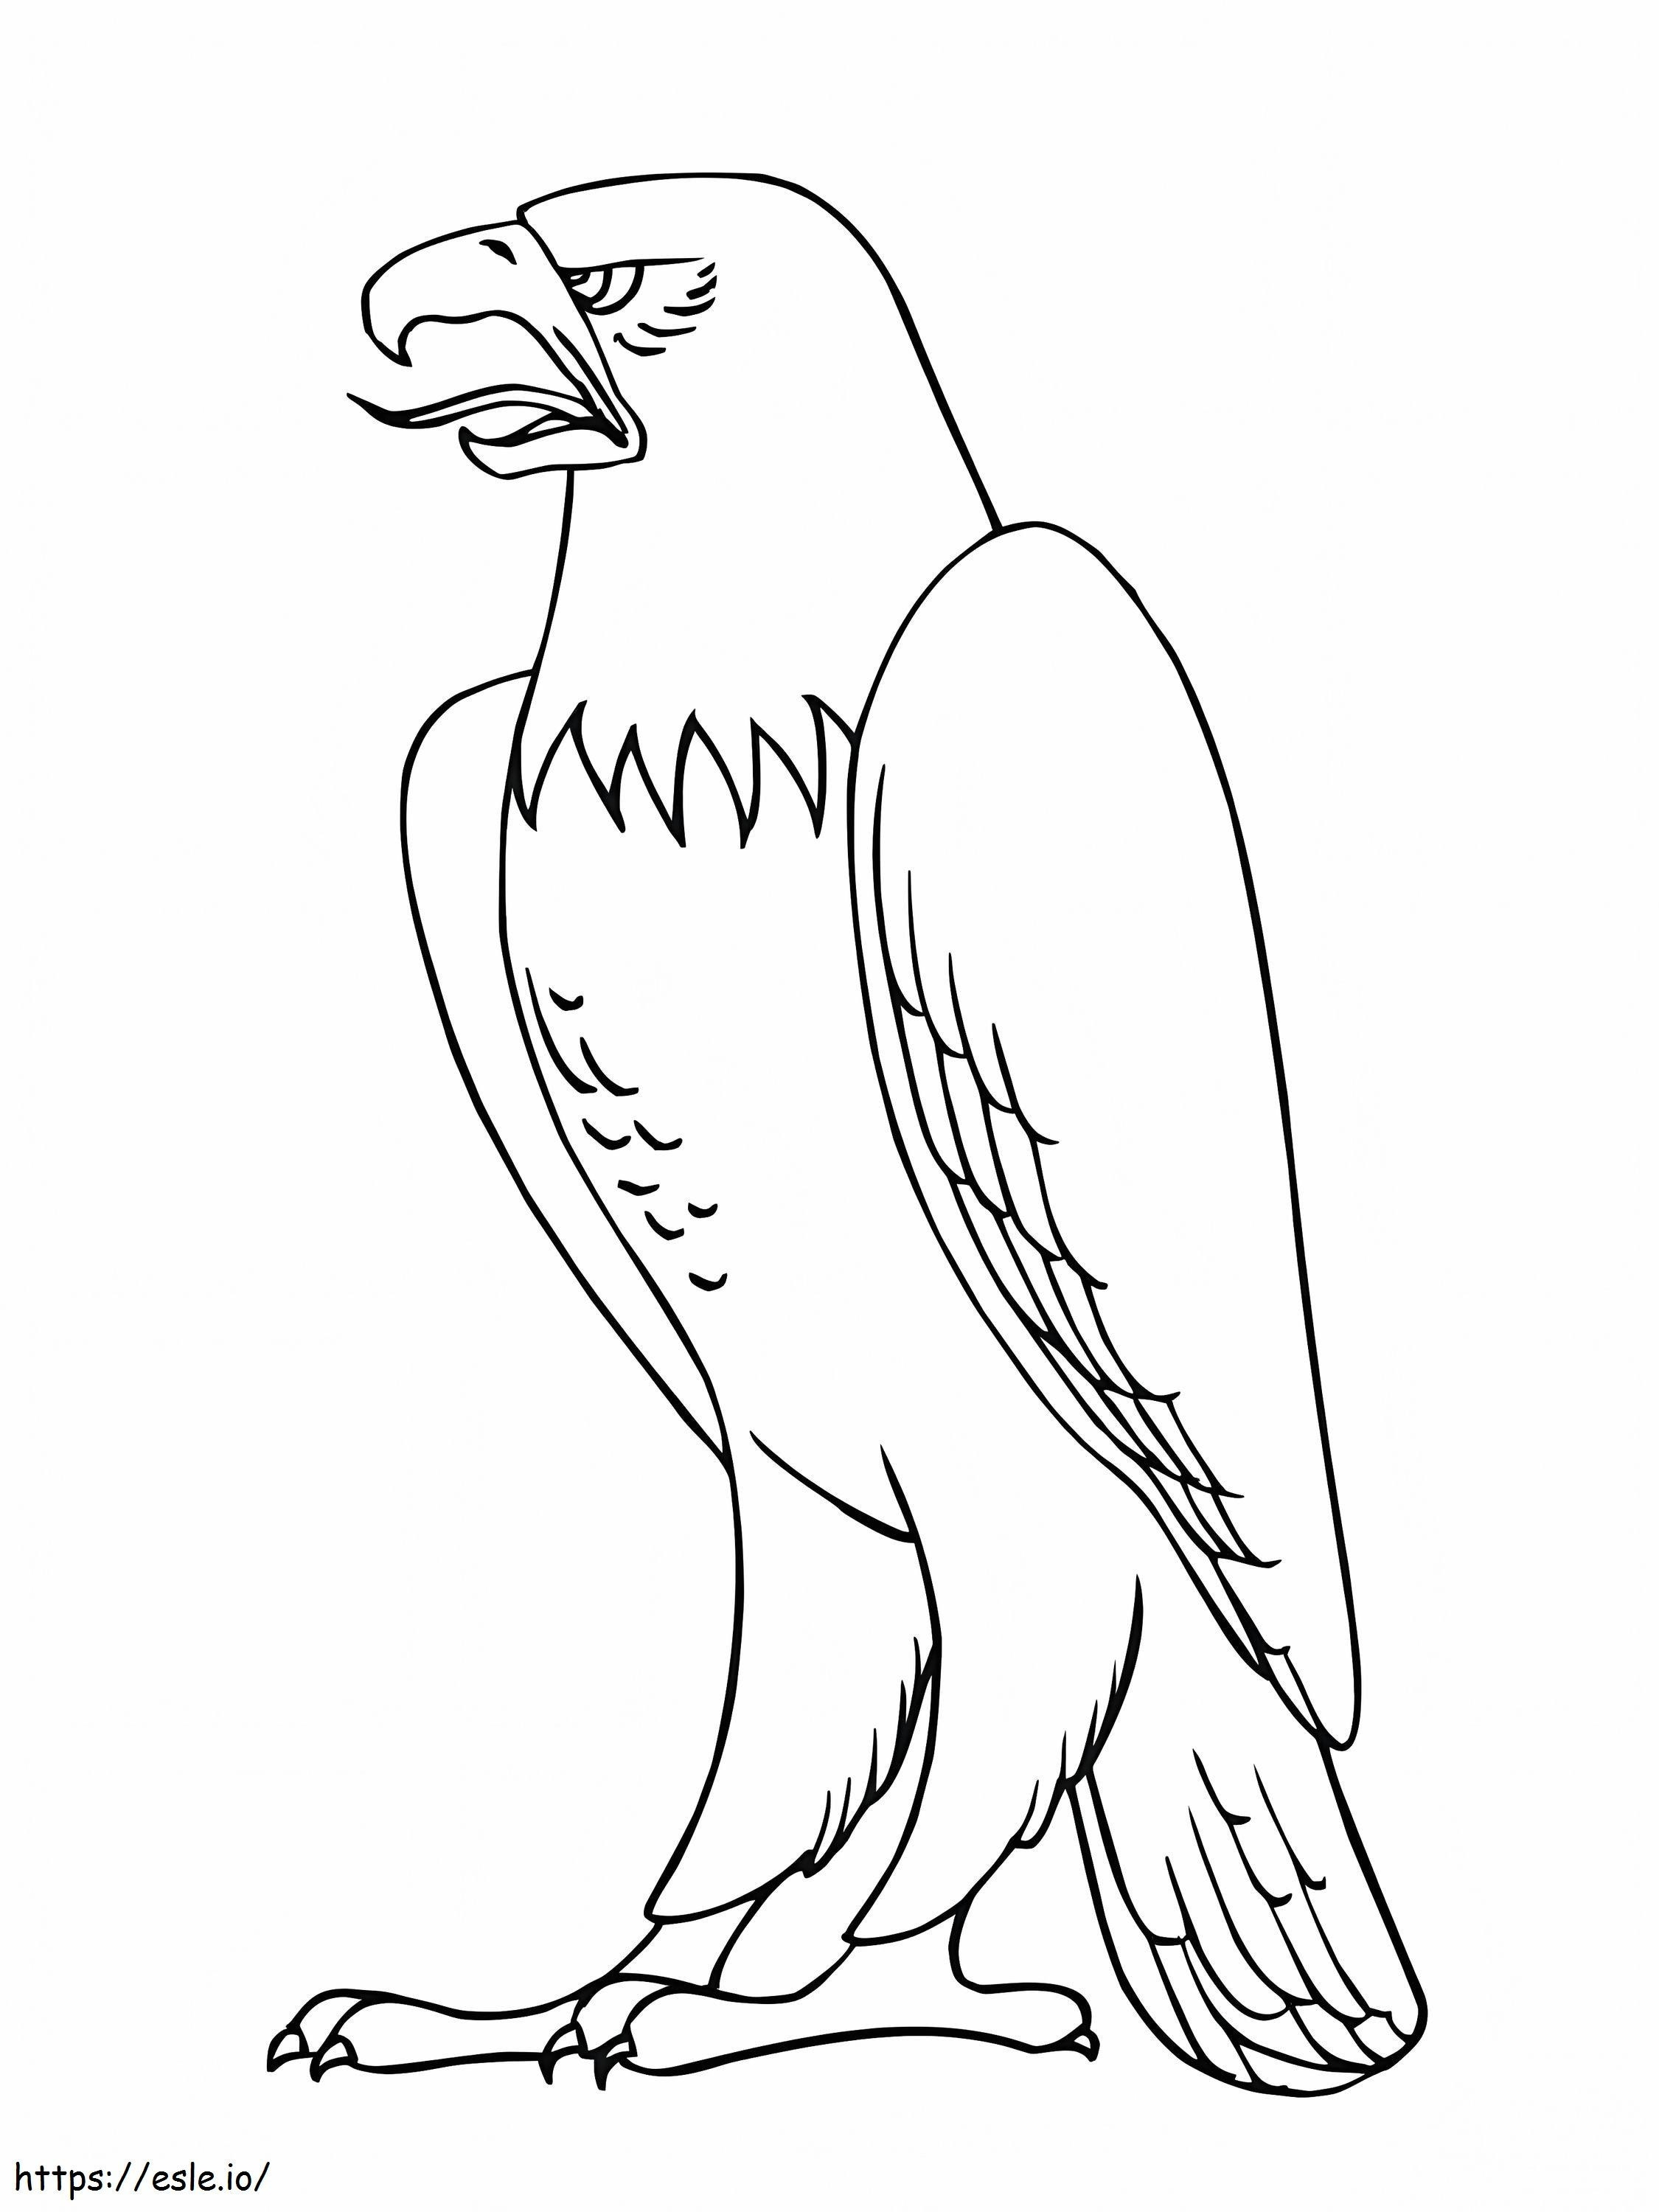 Malseite des Adlers ausmalbilder